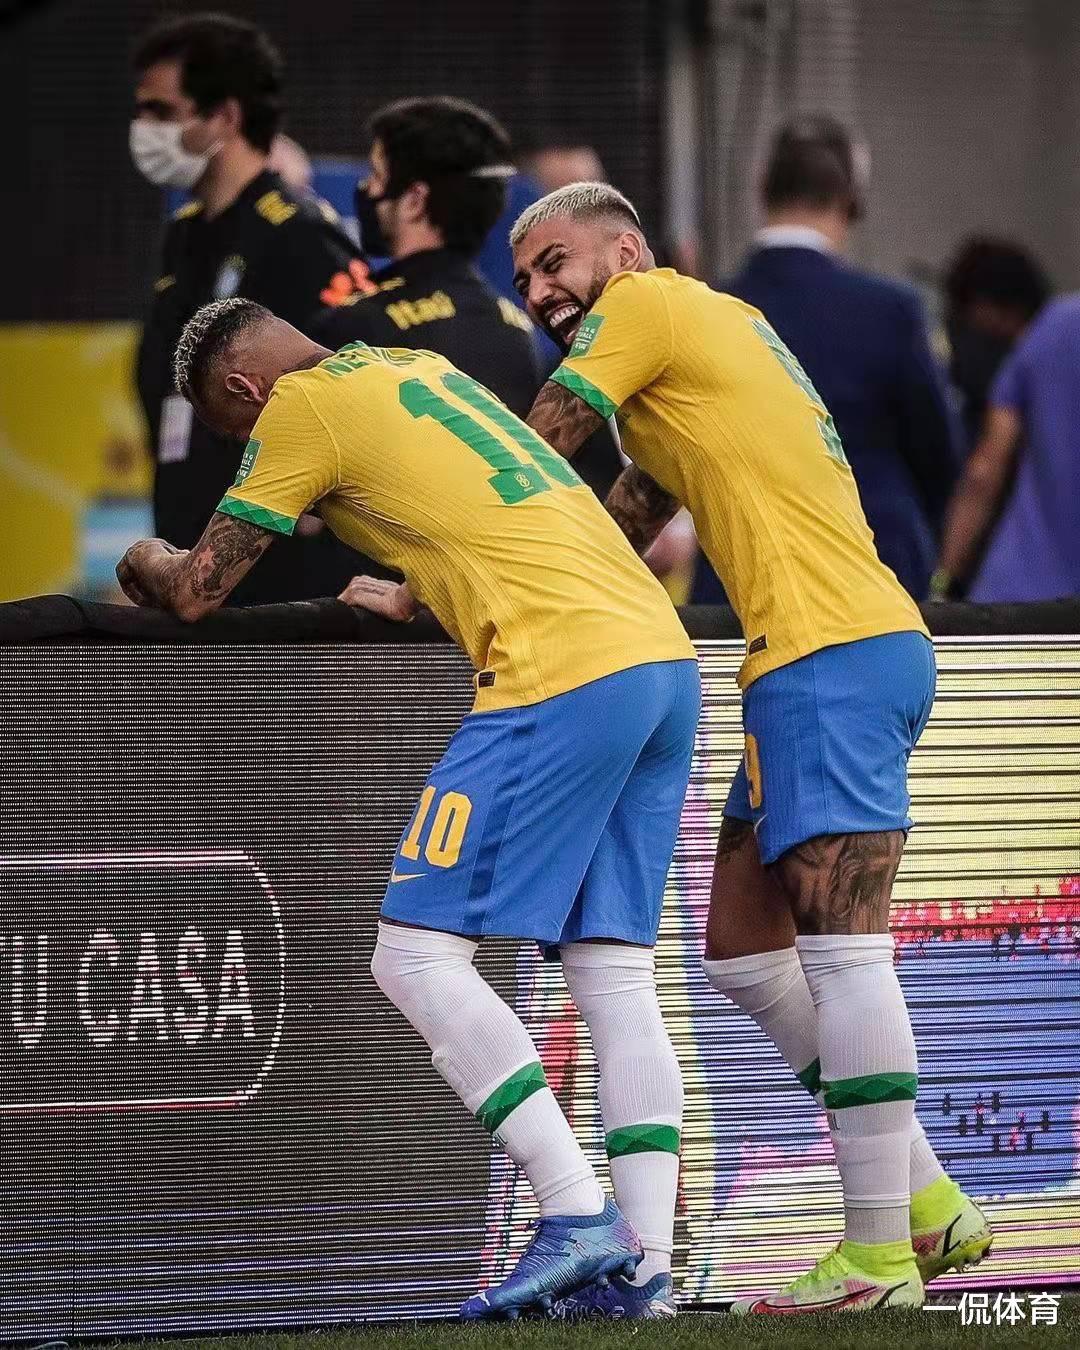 世界性丑闻！巴西卫生院强行驱离阿根廷球员。巴西活该被判负(6)